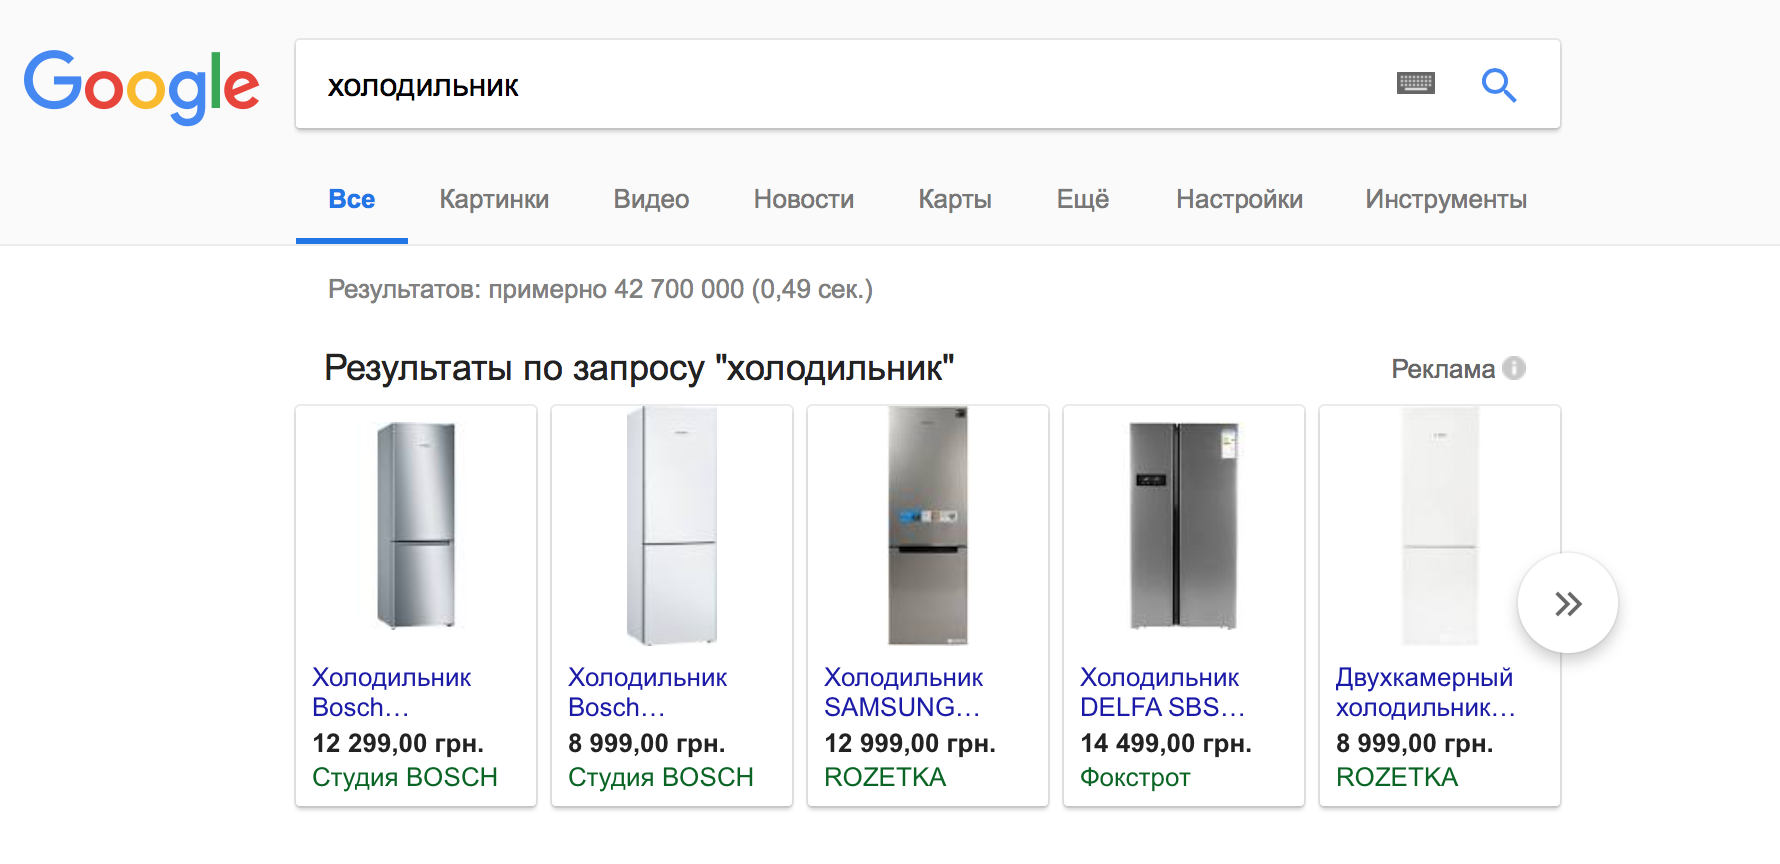 Google запустила в Украине сервис торговых объявлений Google Shopping